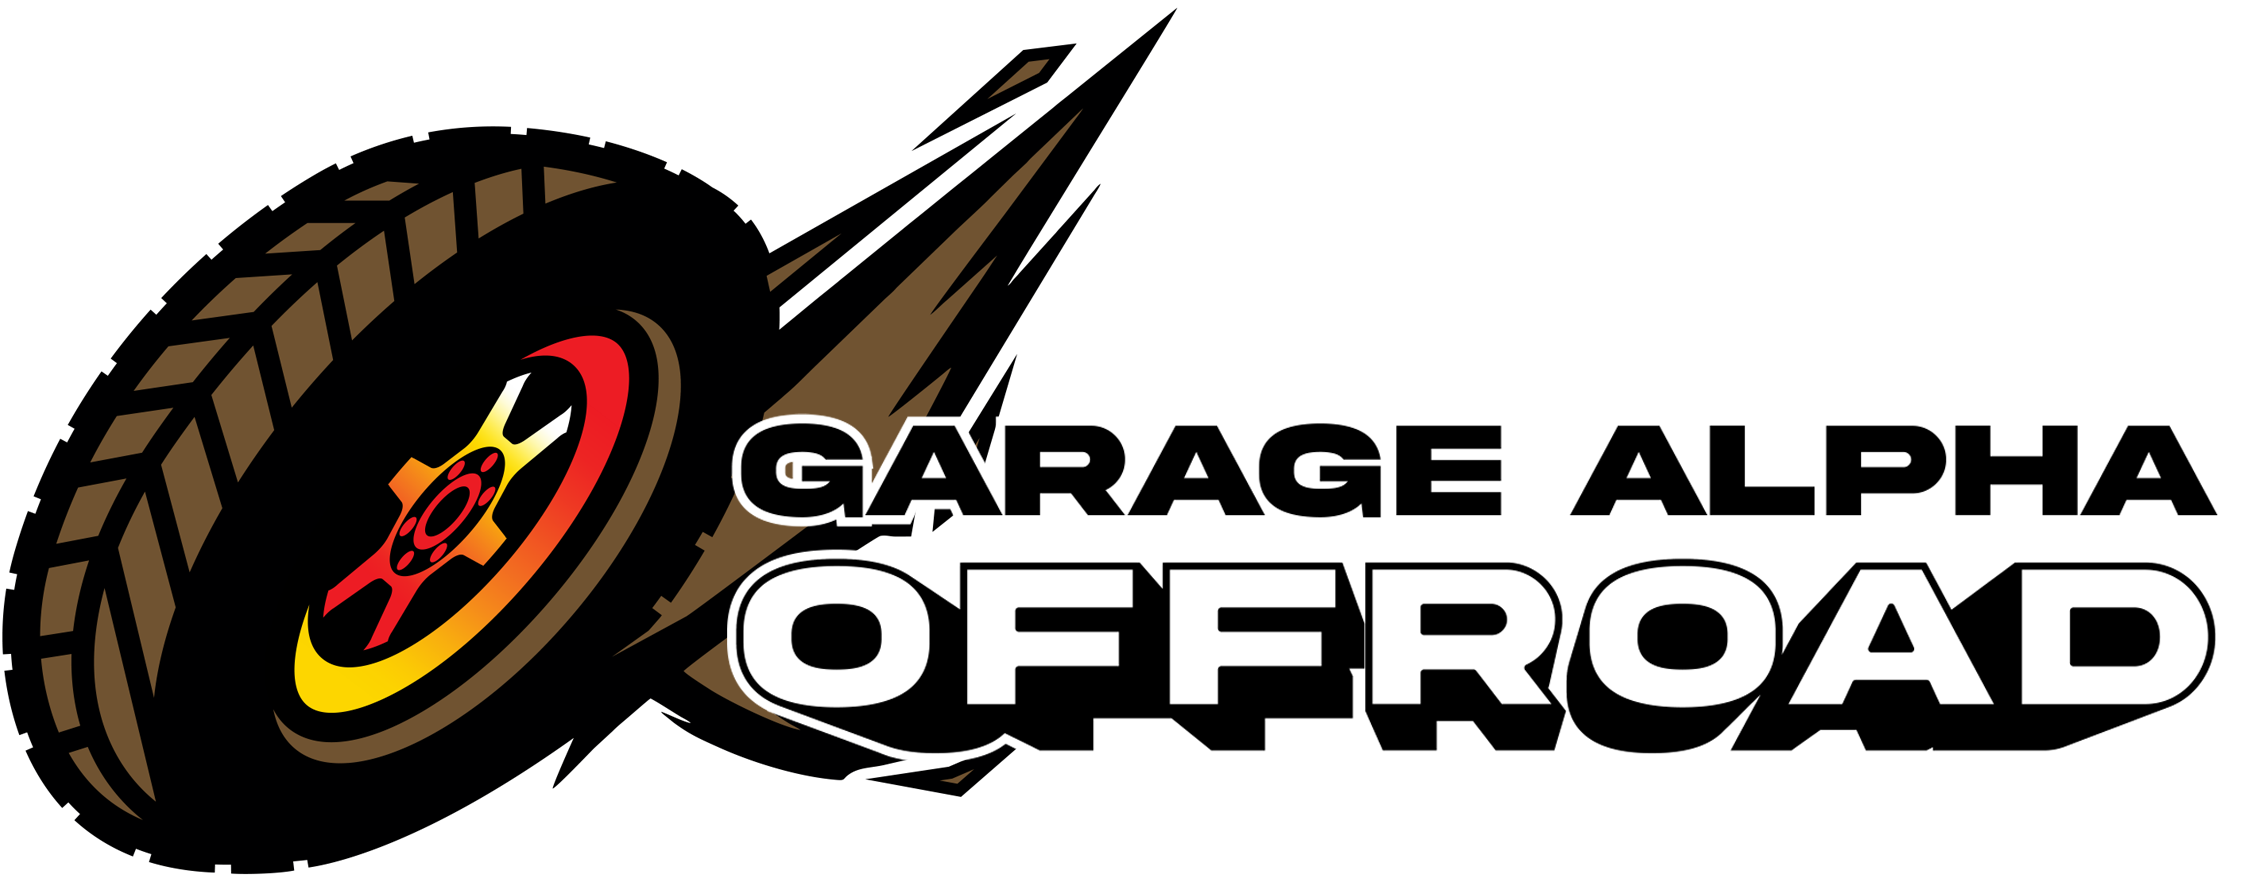 Garage Alpha OffRoad